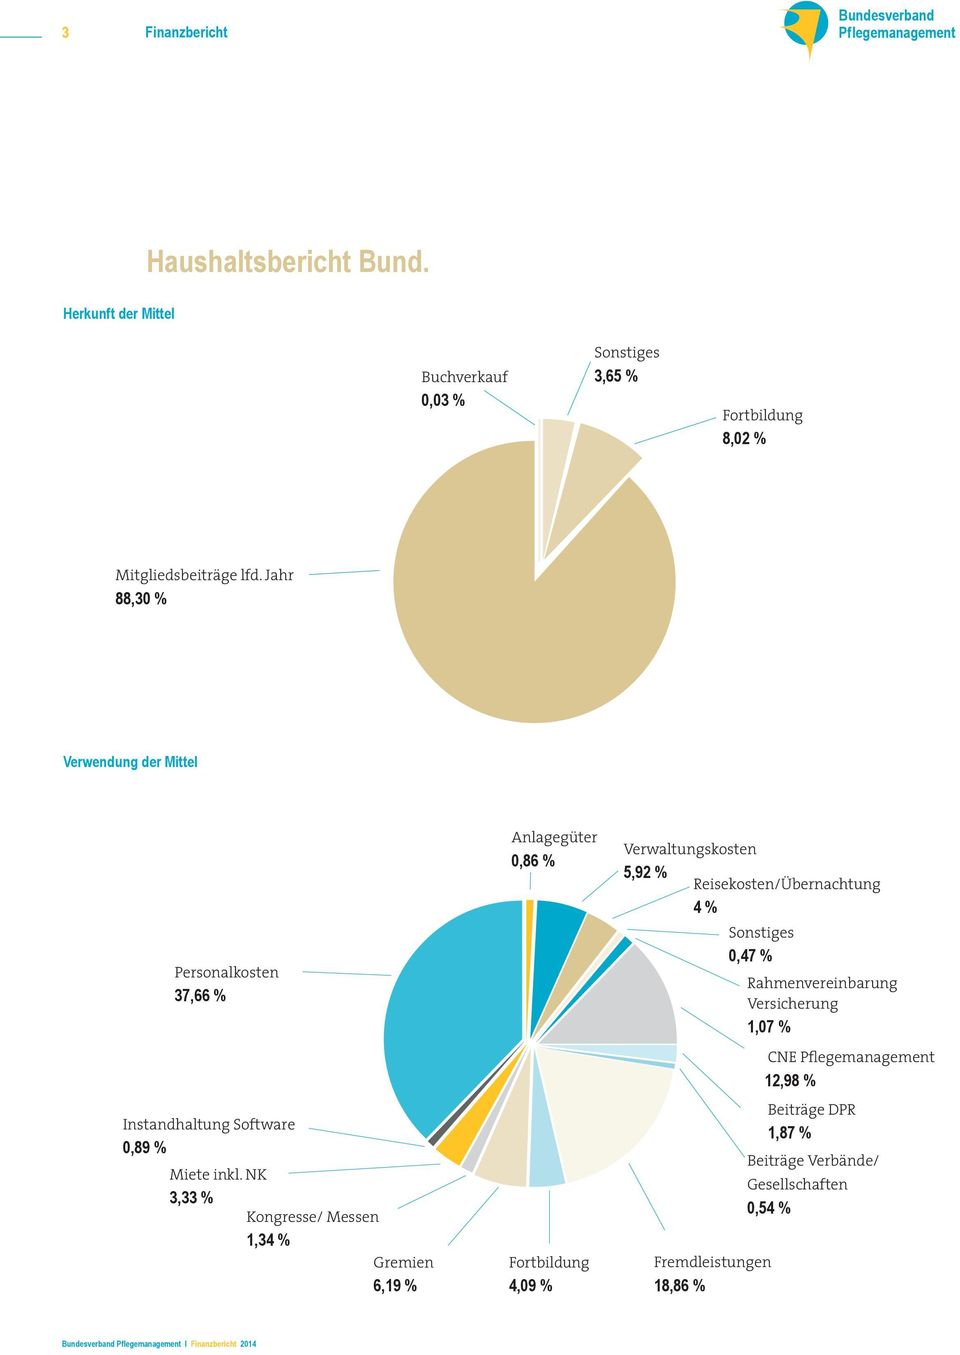 NK 3,33 % Kongresse/ Messen 1,34 % Gremien 6,19 % Anlagegüter 0,86 % Fortbildung 4,09 % Verwaltungskosten 5,92 %